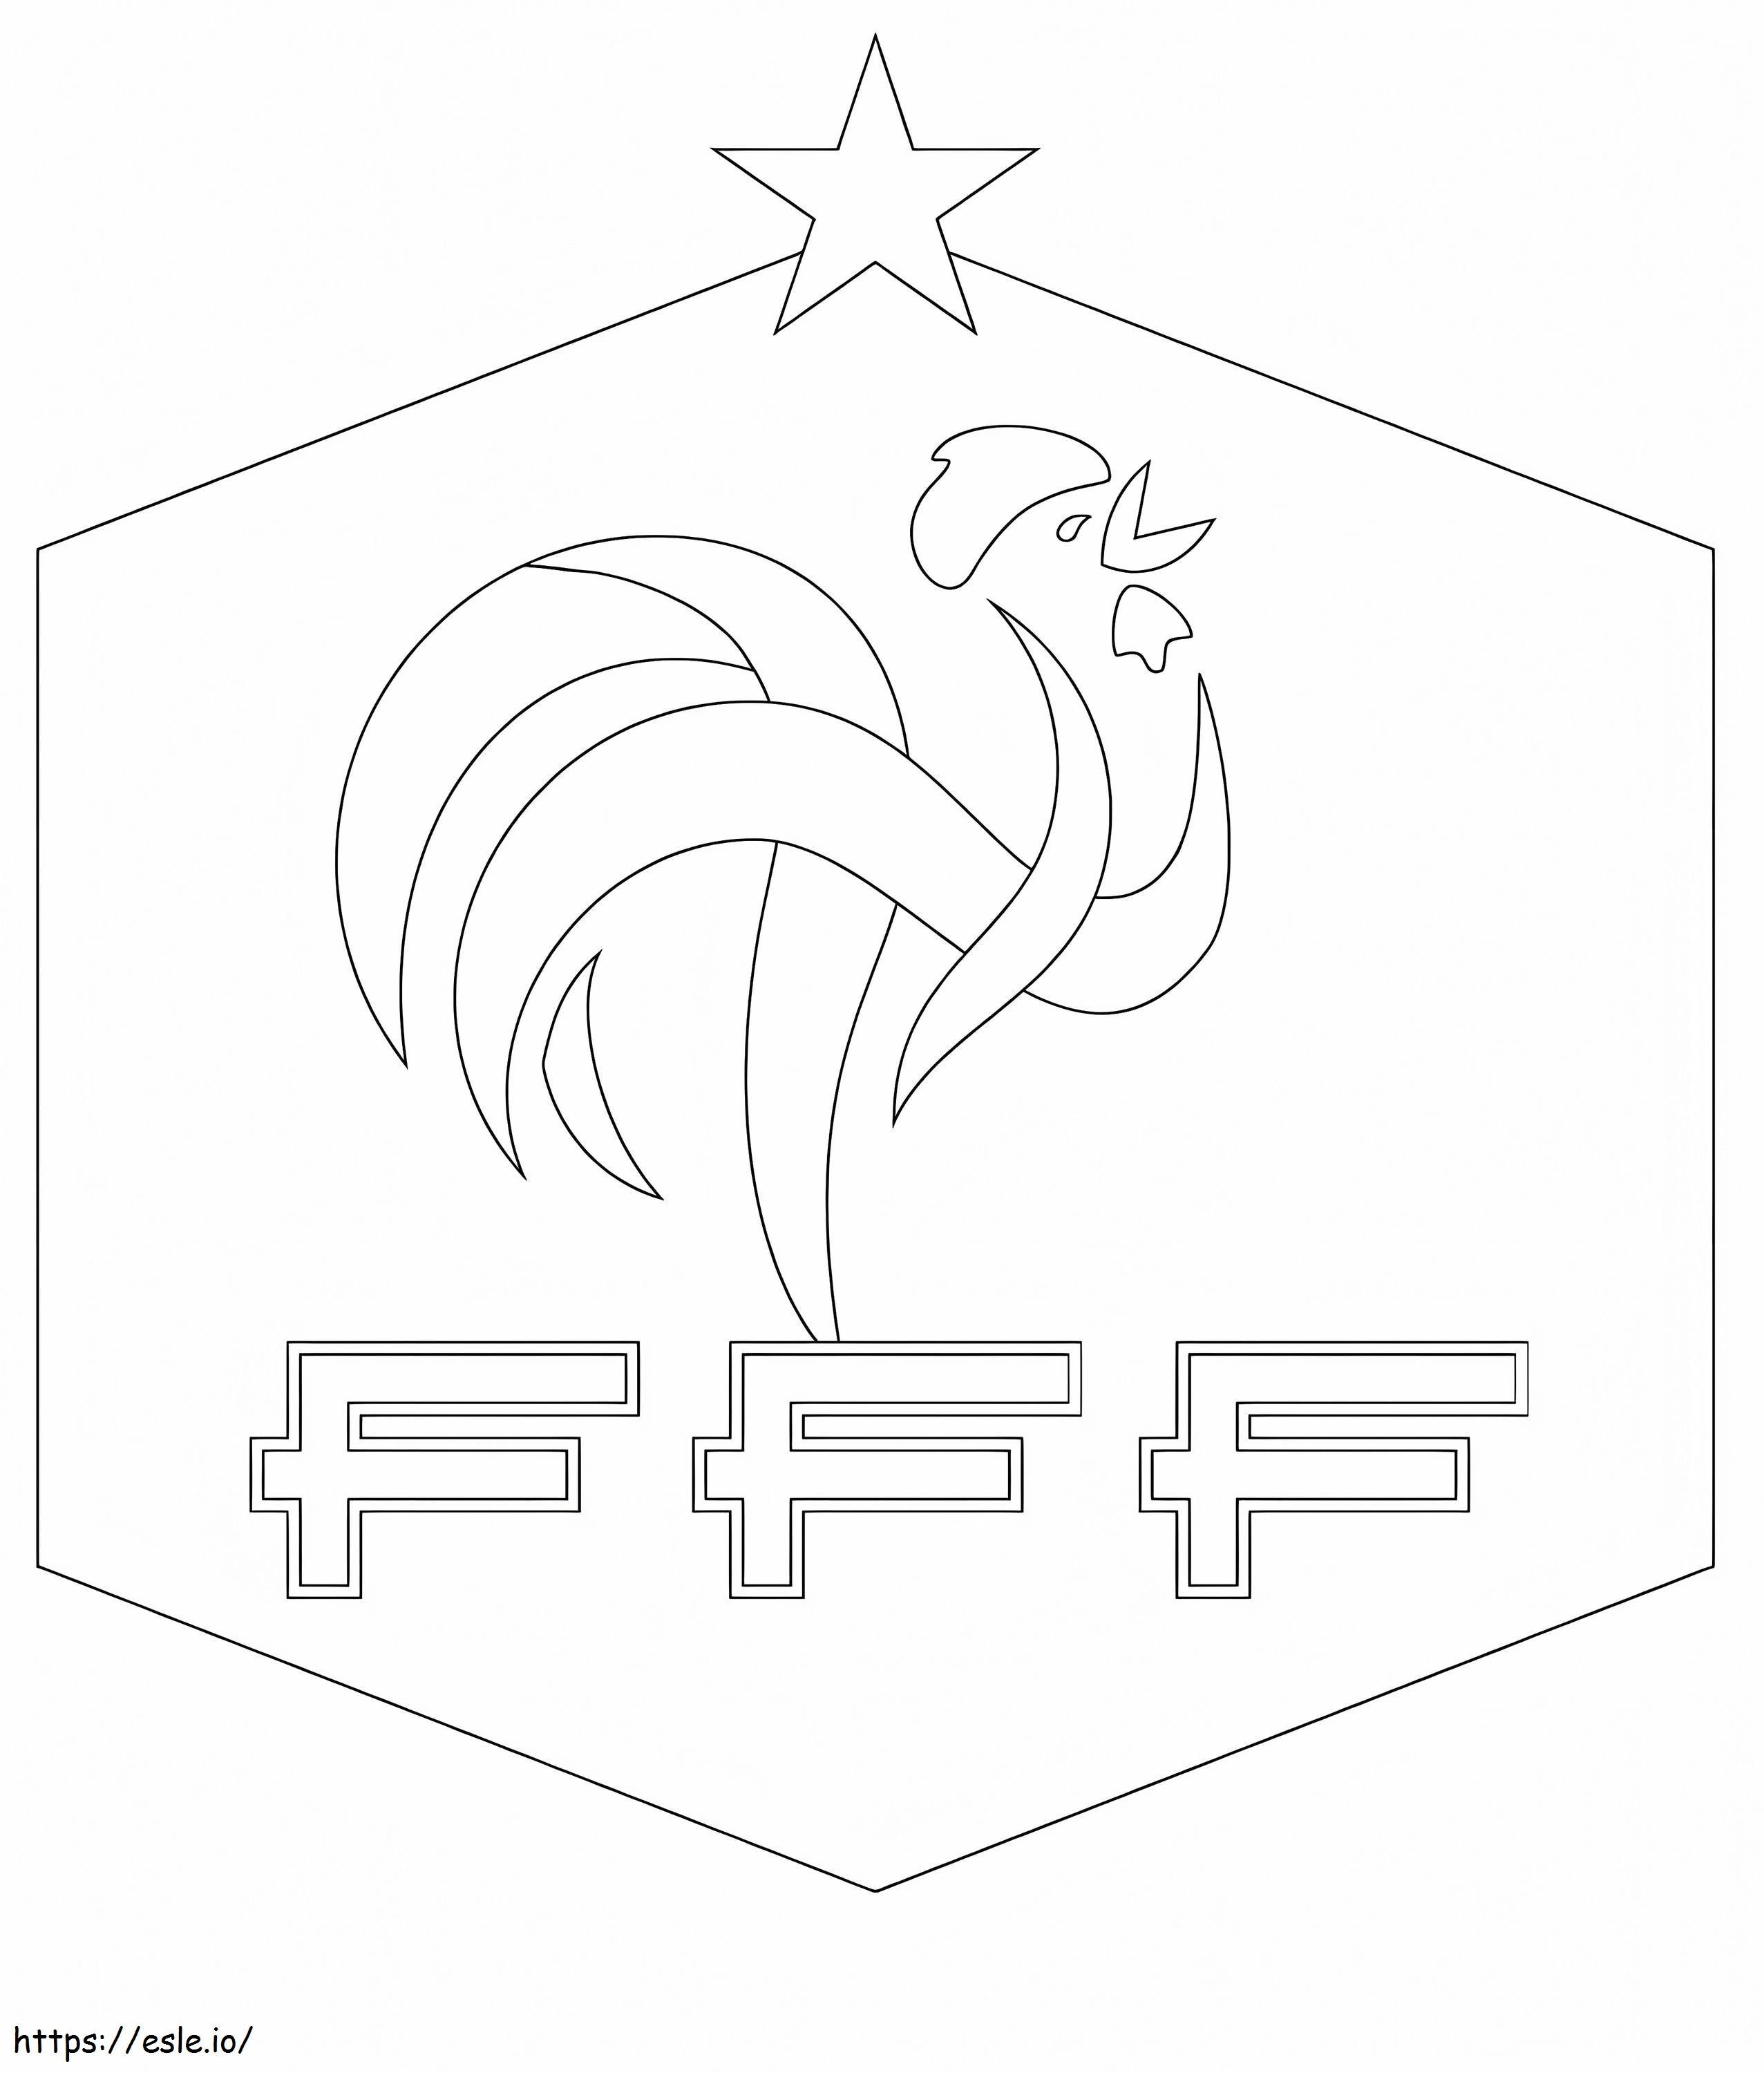 Logo della federazione calcistica francese da colorare